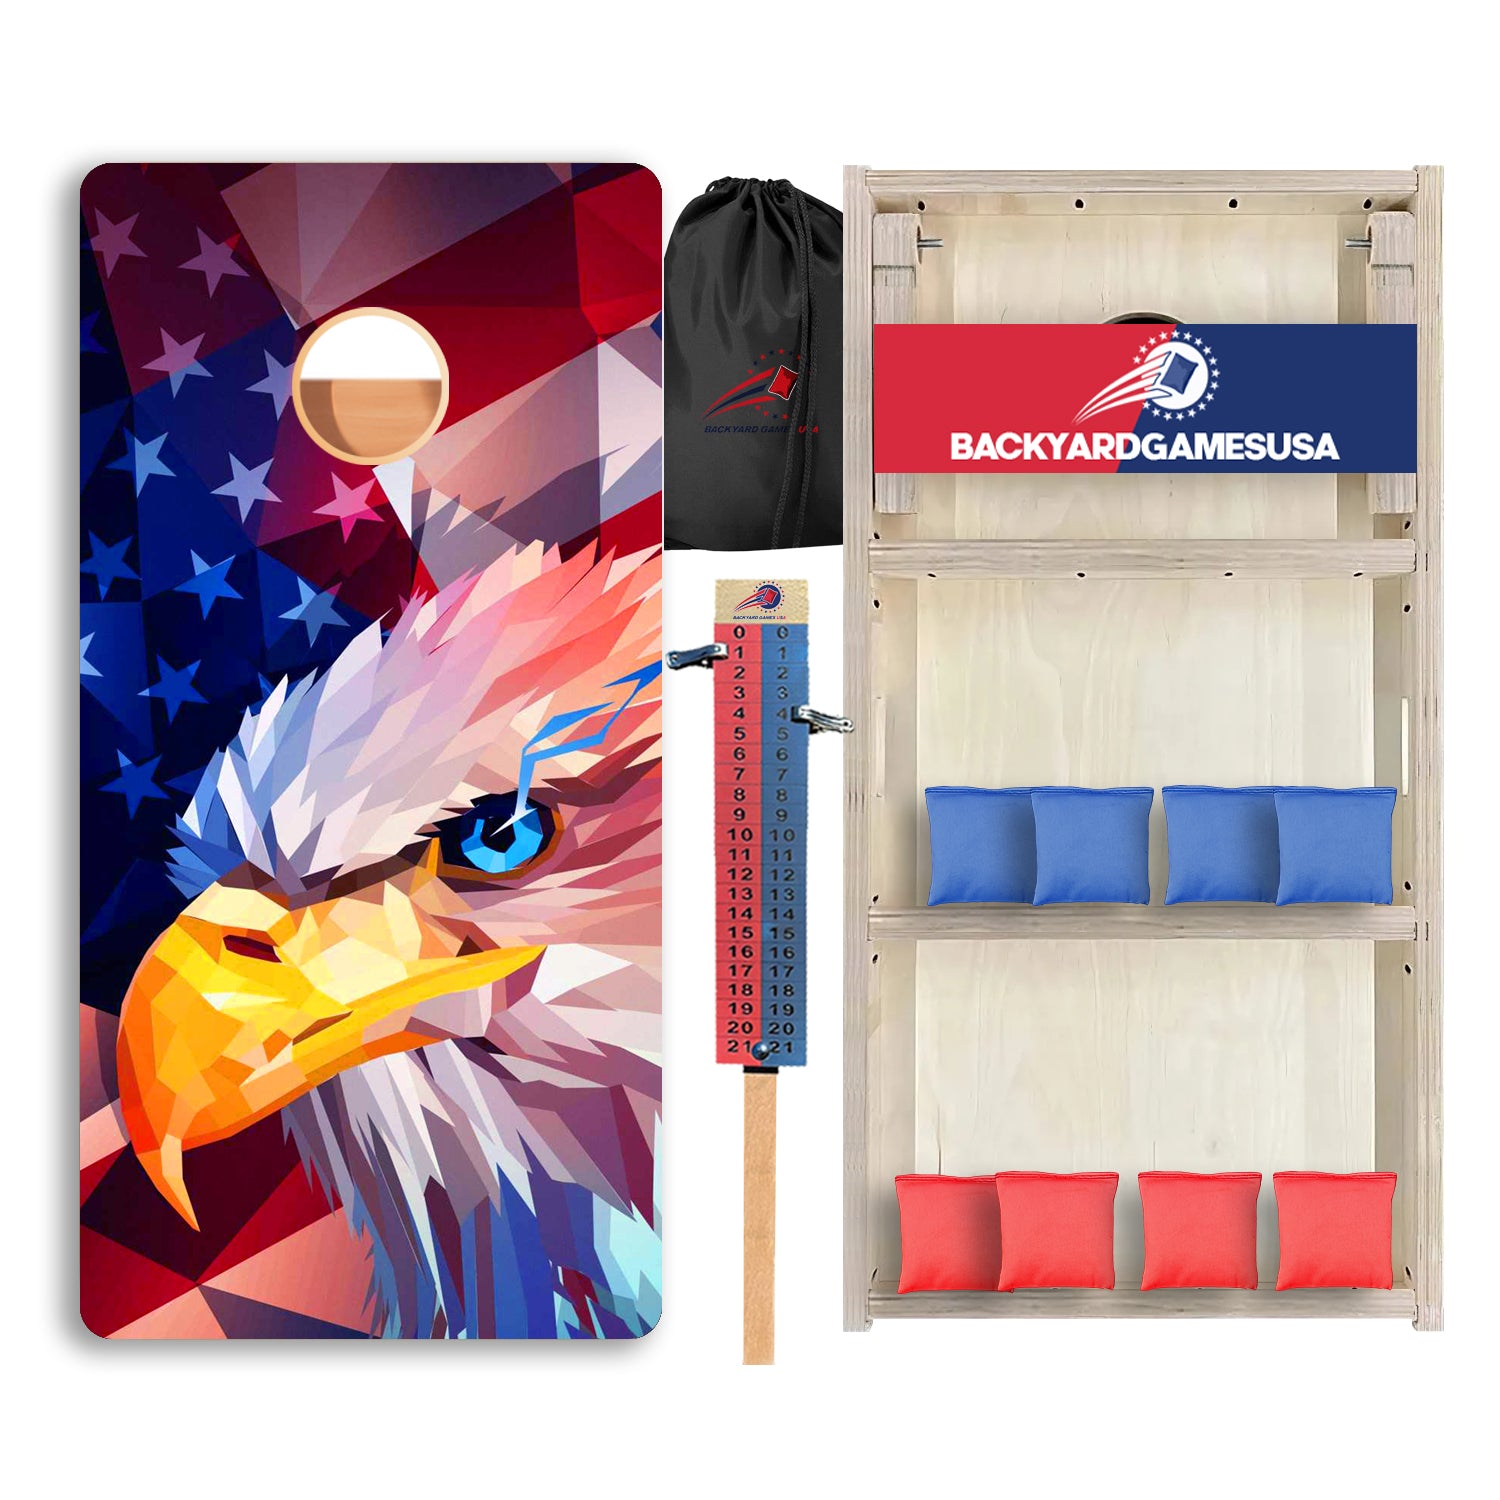 Eagle Art Flag Professional Cornhole Boards